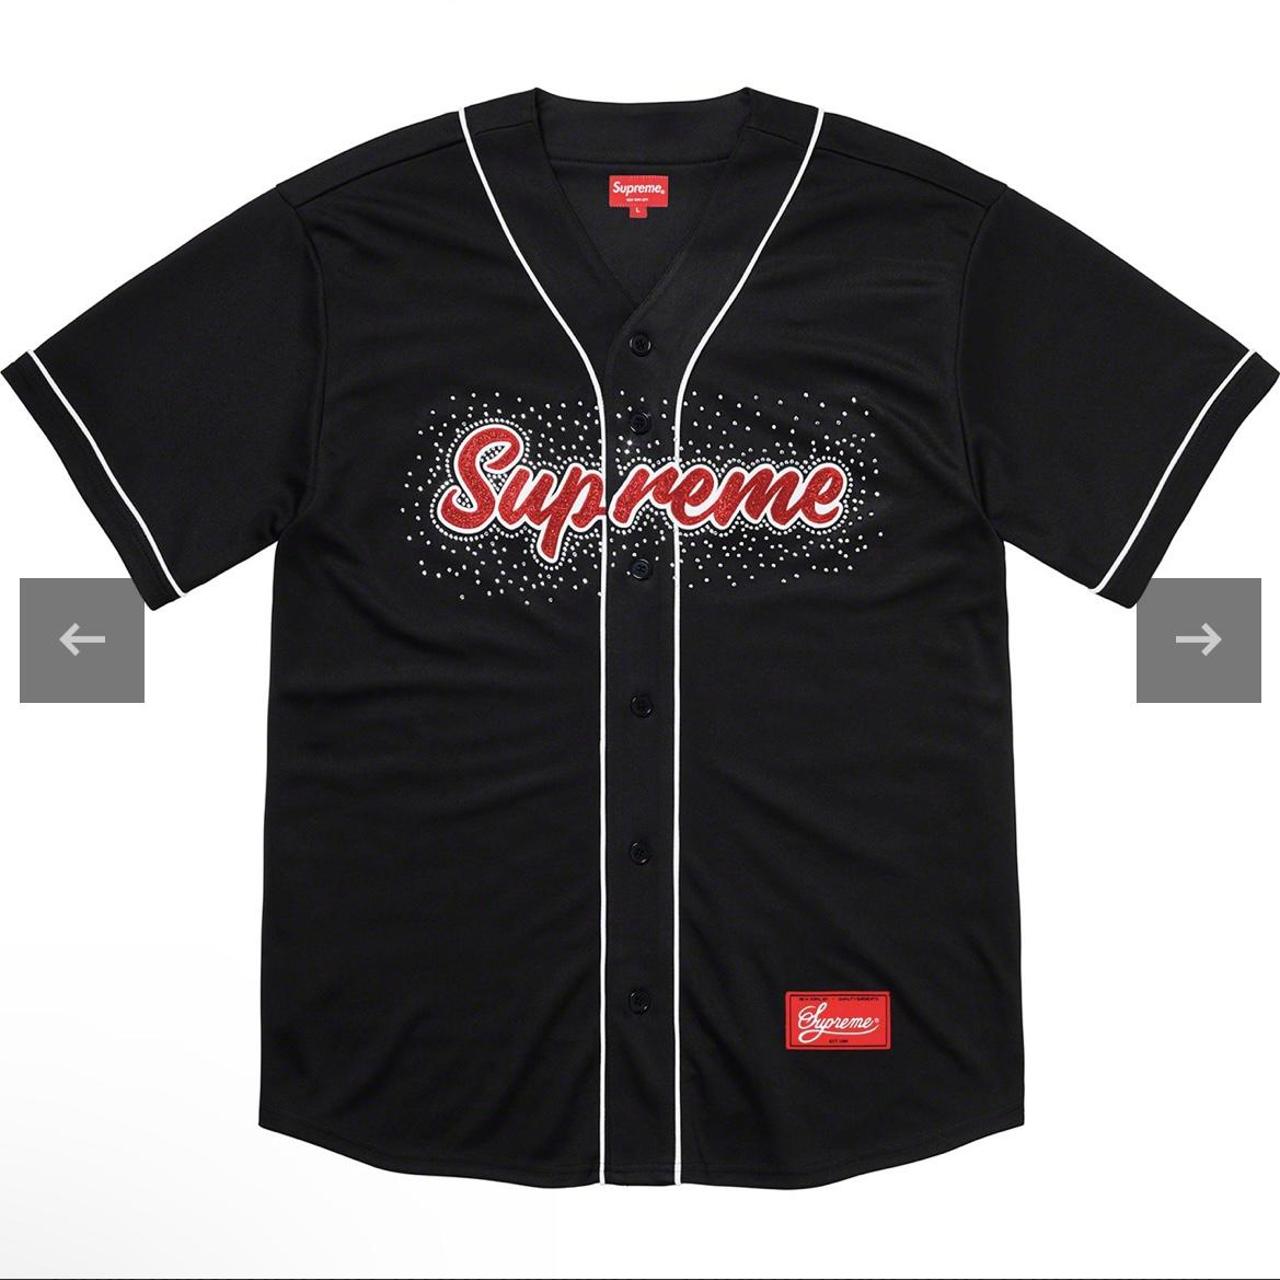 Supreme black/red rhinestone baseball jersey size small